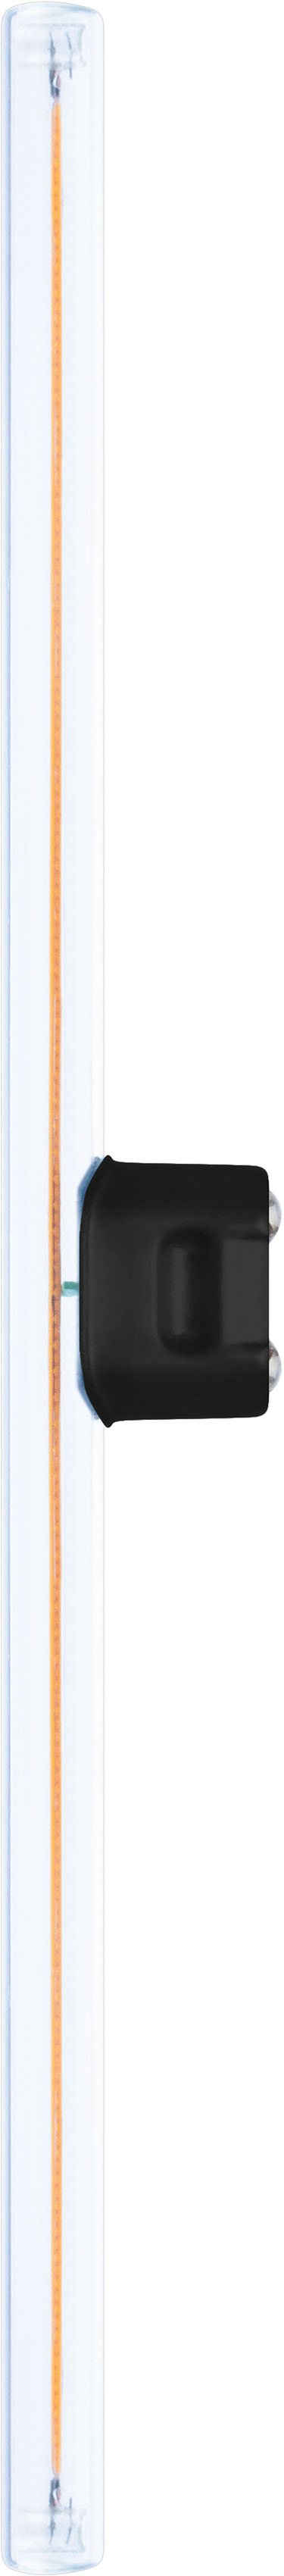 SEGULA LED-Leuchtmittel LED Linienlampe Mini S14d 300mm klar, S14d, Warmweiß, dimmbar, S14d, Linienlampe Mini, 300mm, klar